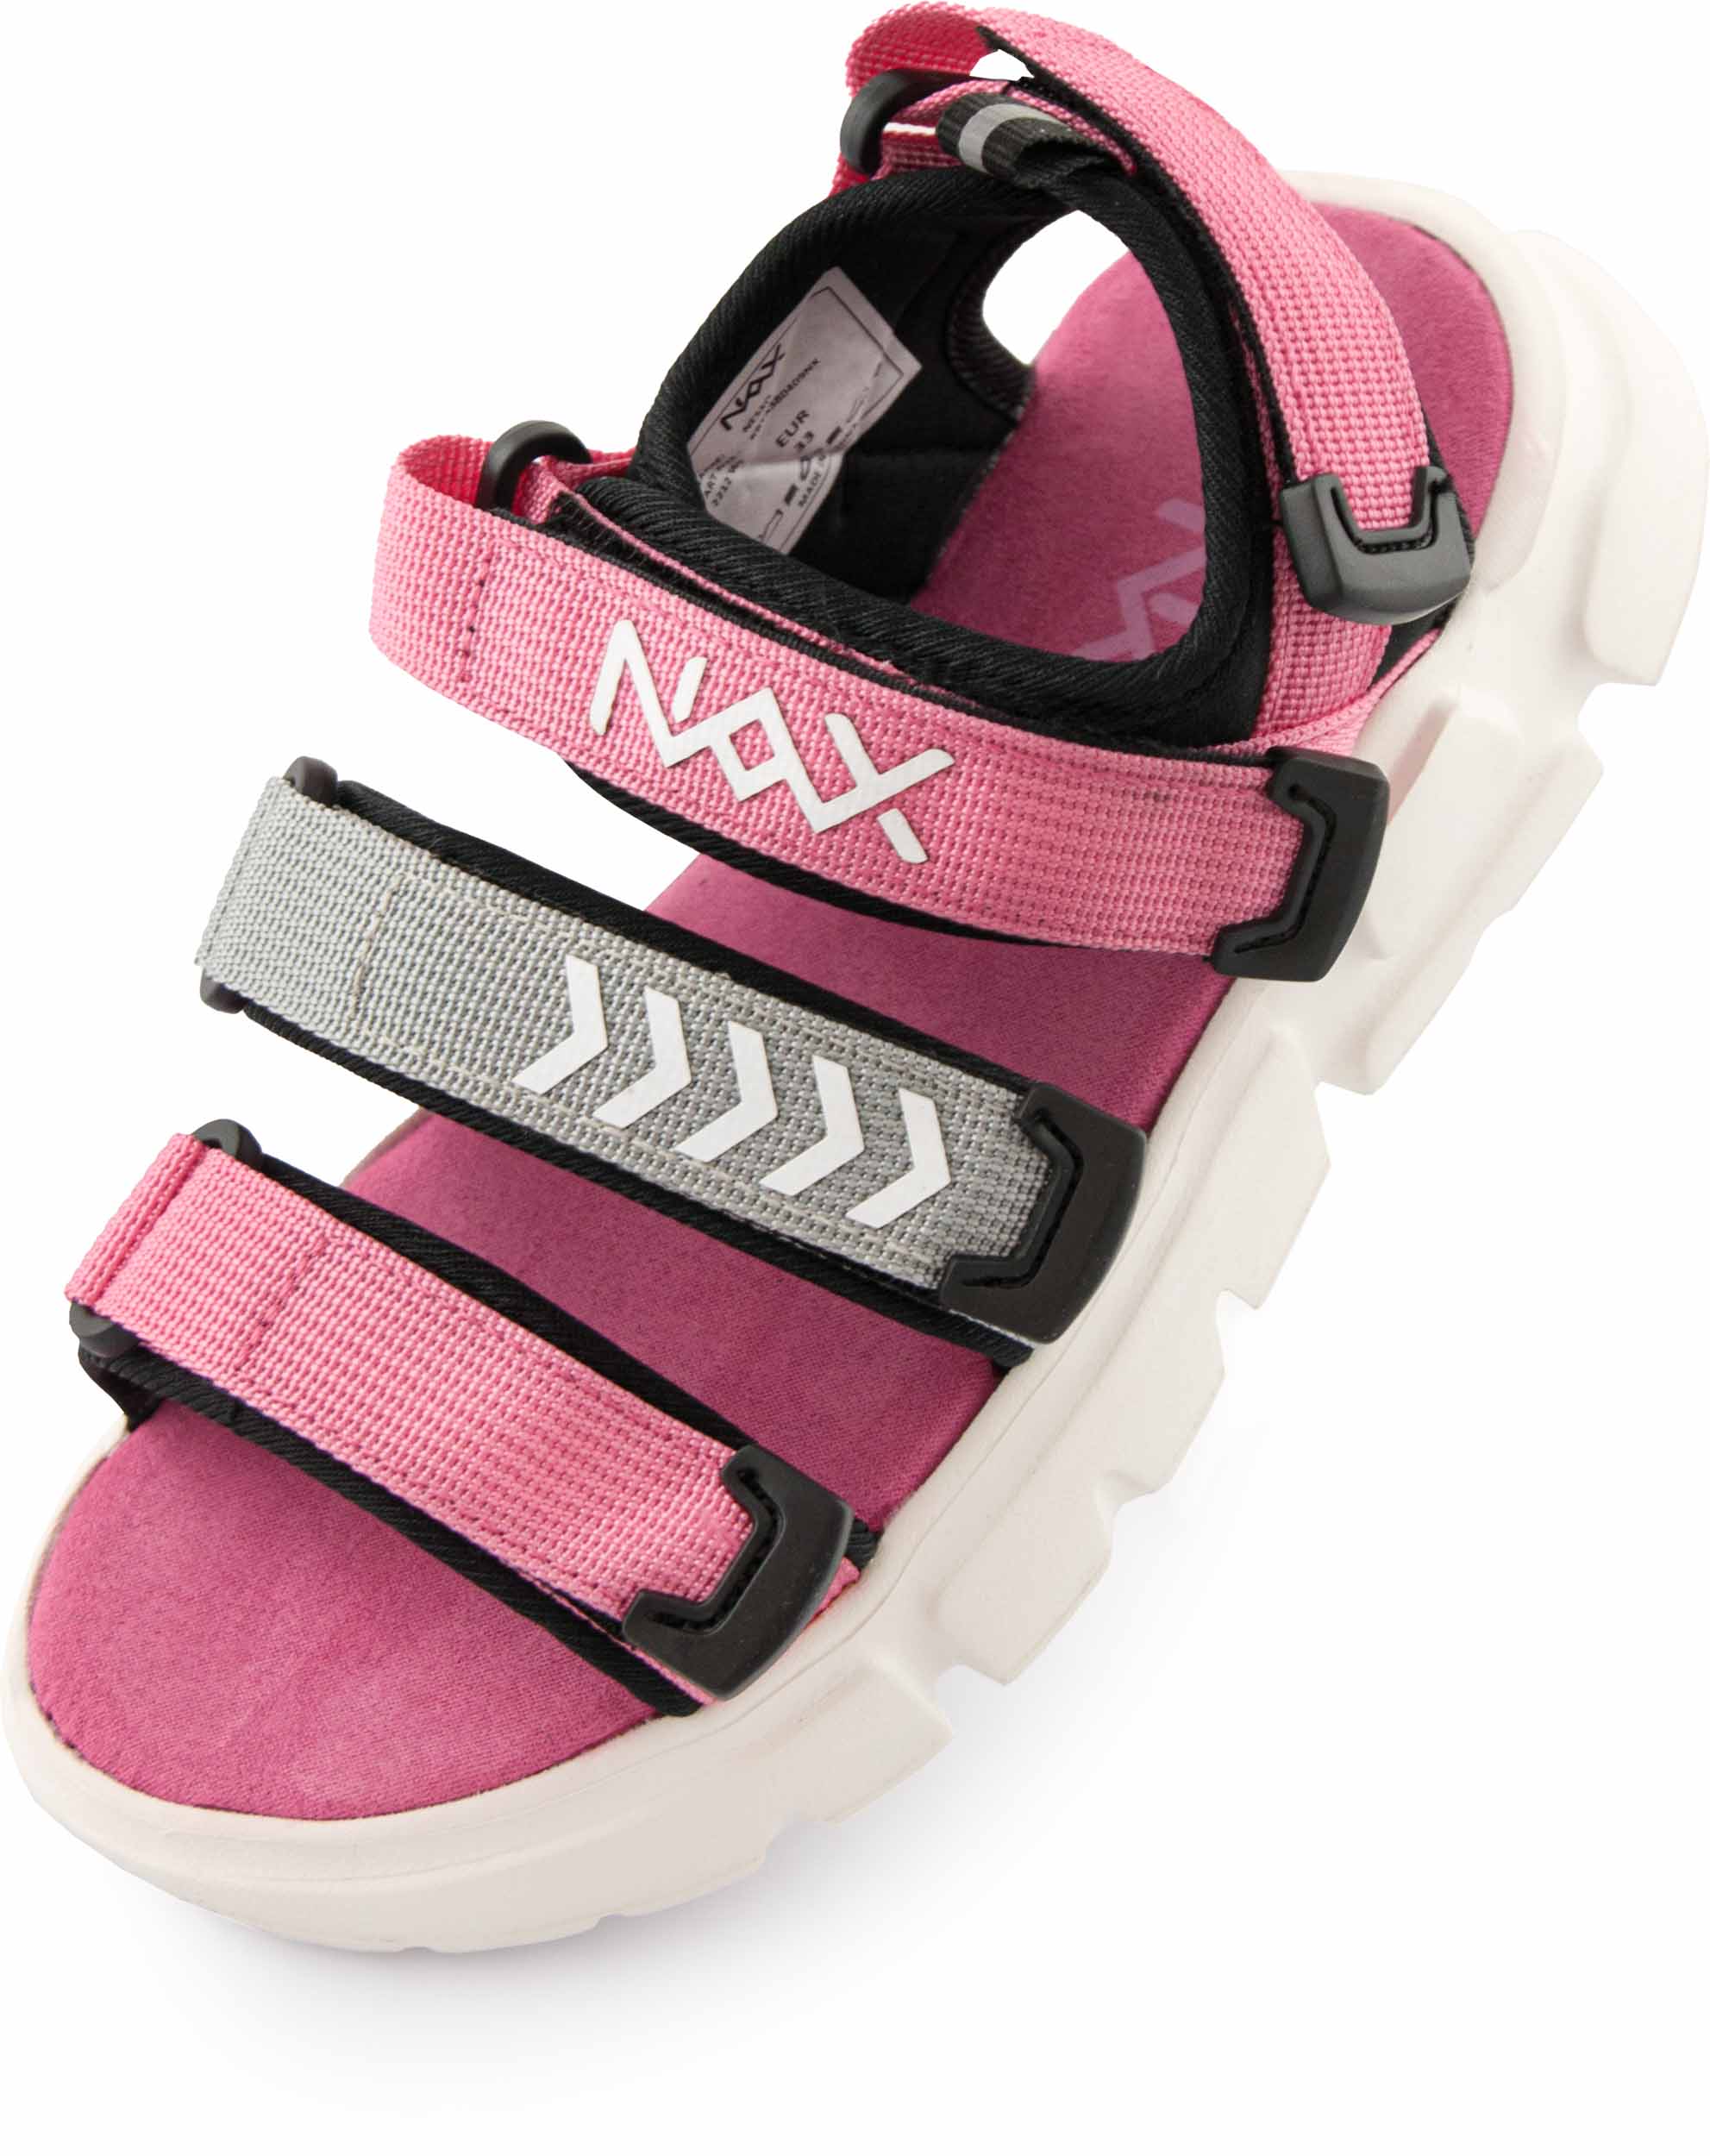 Dětské sandály NAX NESSO|31